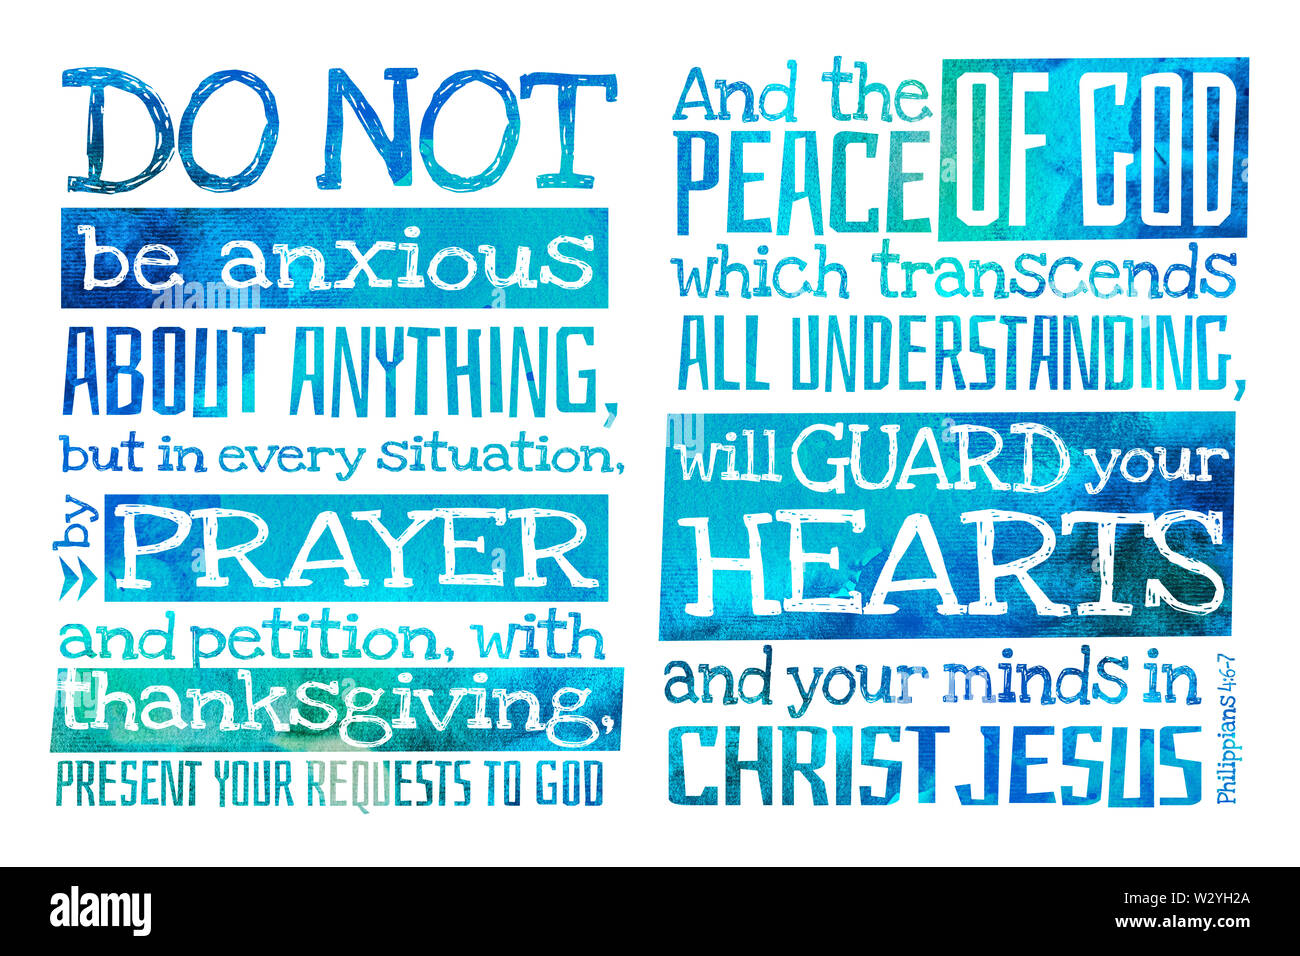 Seid um nichts besorgt, Und der Friede Gottes, der allen Verstand übersteigt, wird eure Herzen zu schützen. (Philipper 4:6-7) - Bibel quot Stockfoto